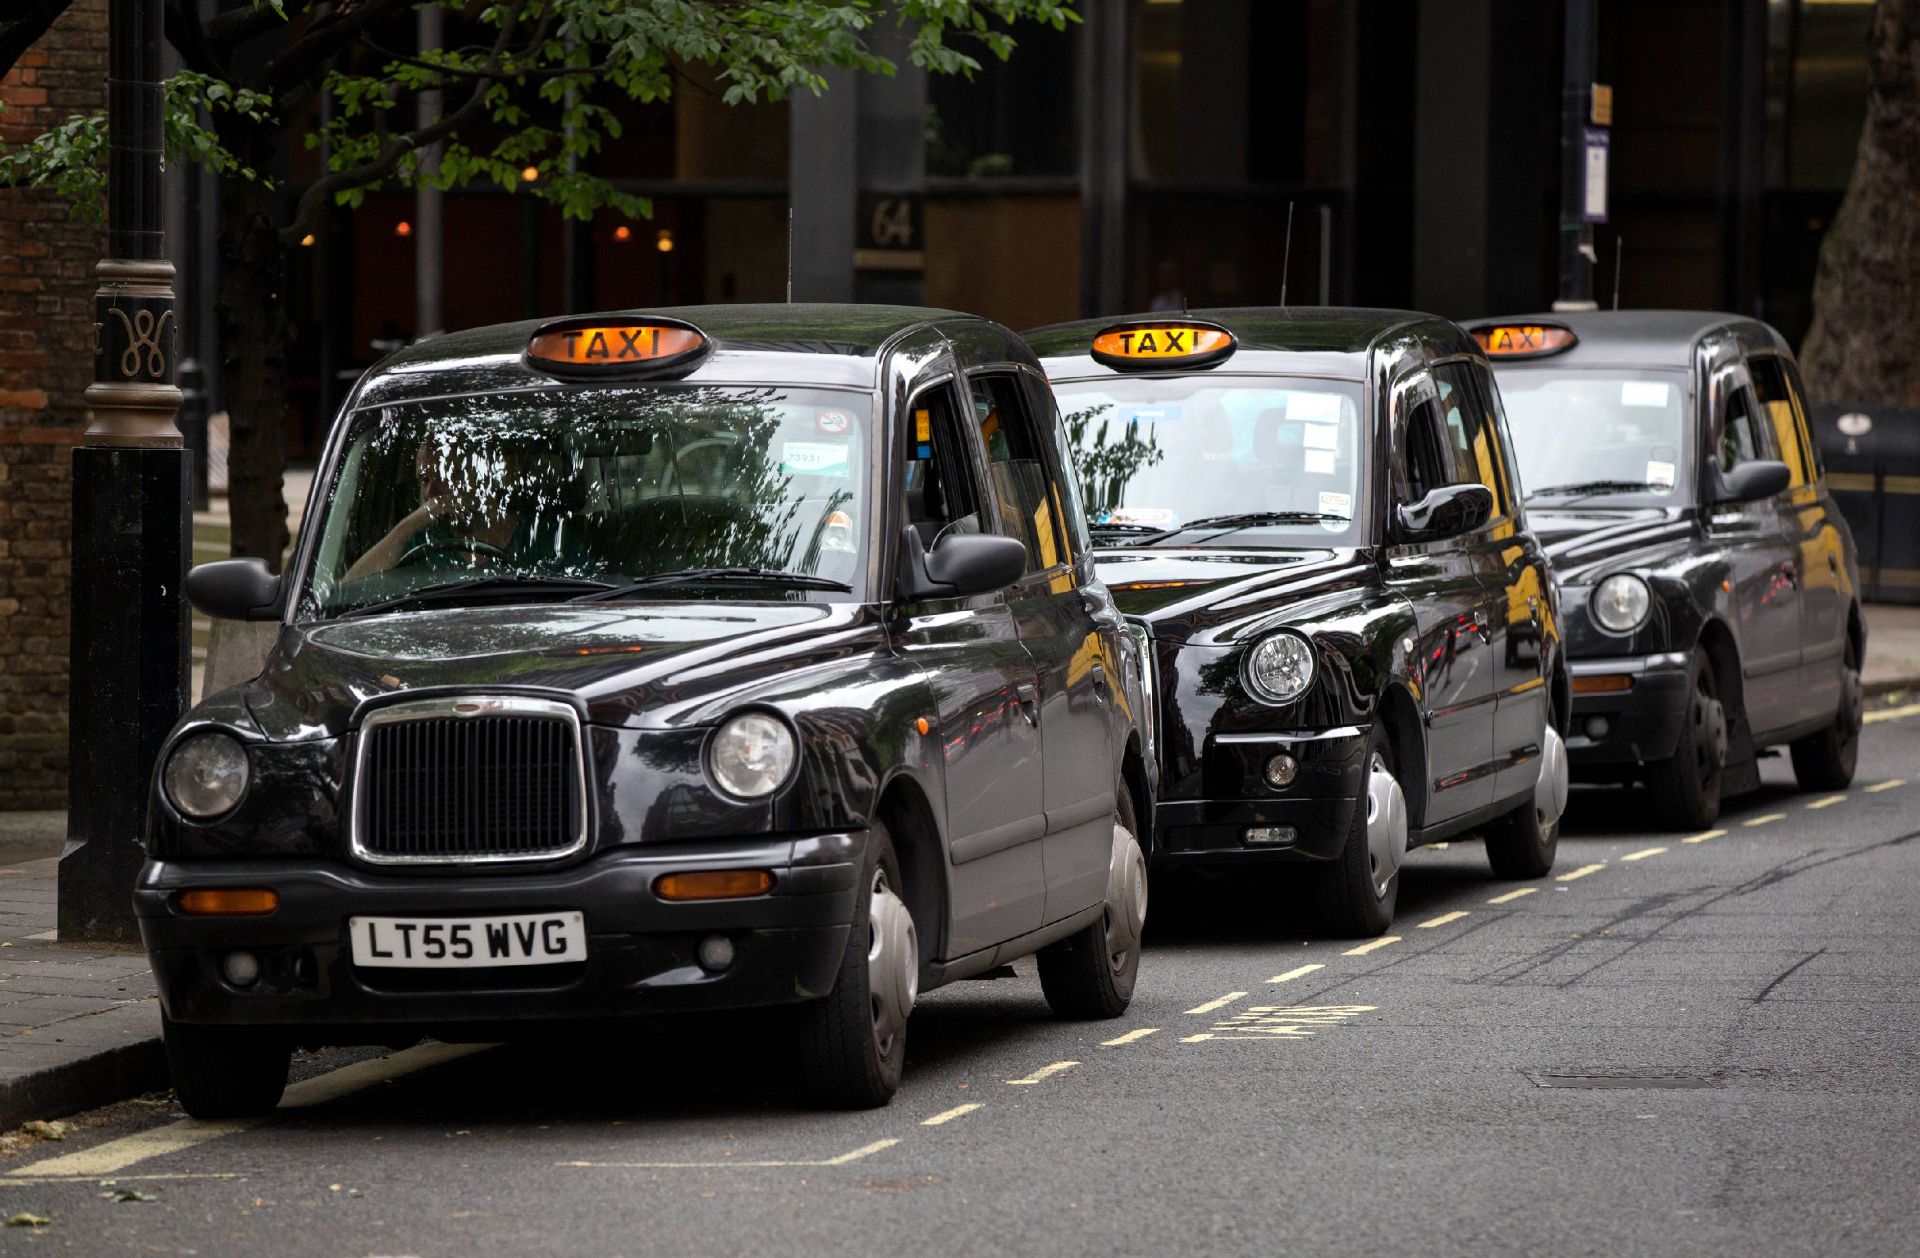 تاکسی های لندن